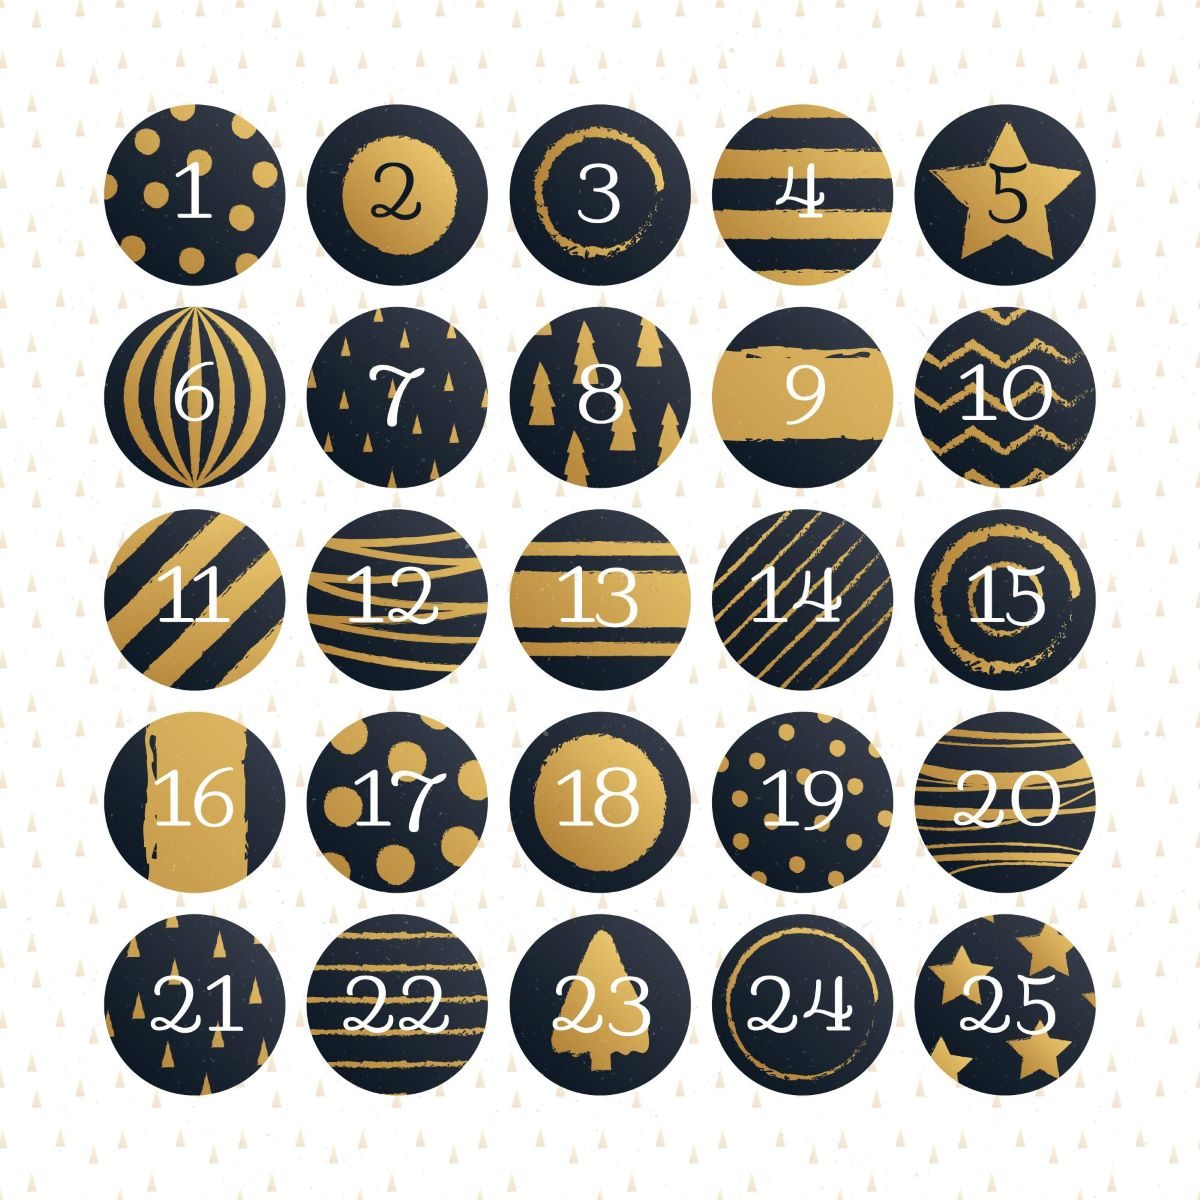 Image d'un calendrier de l'avent constitué de boules numérotées